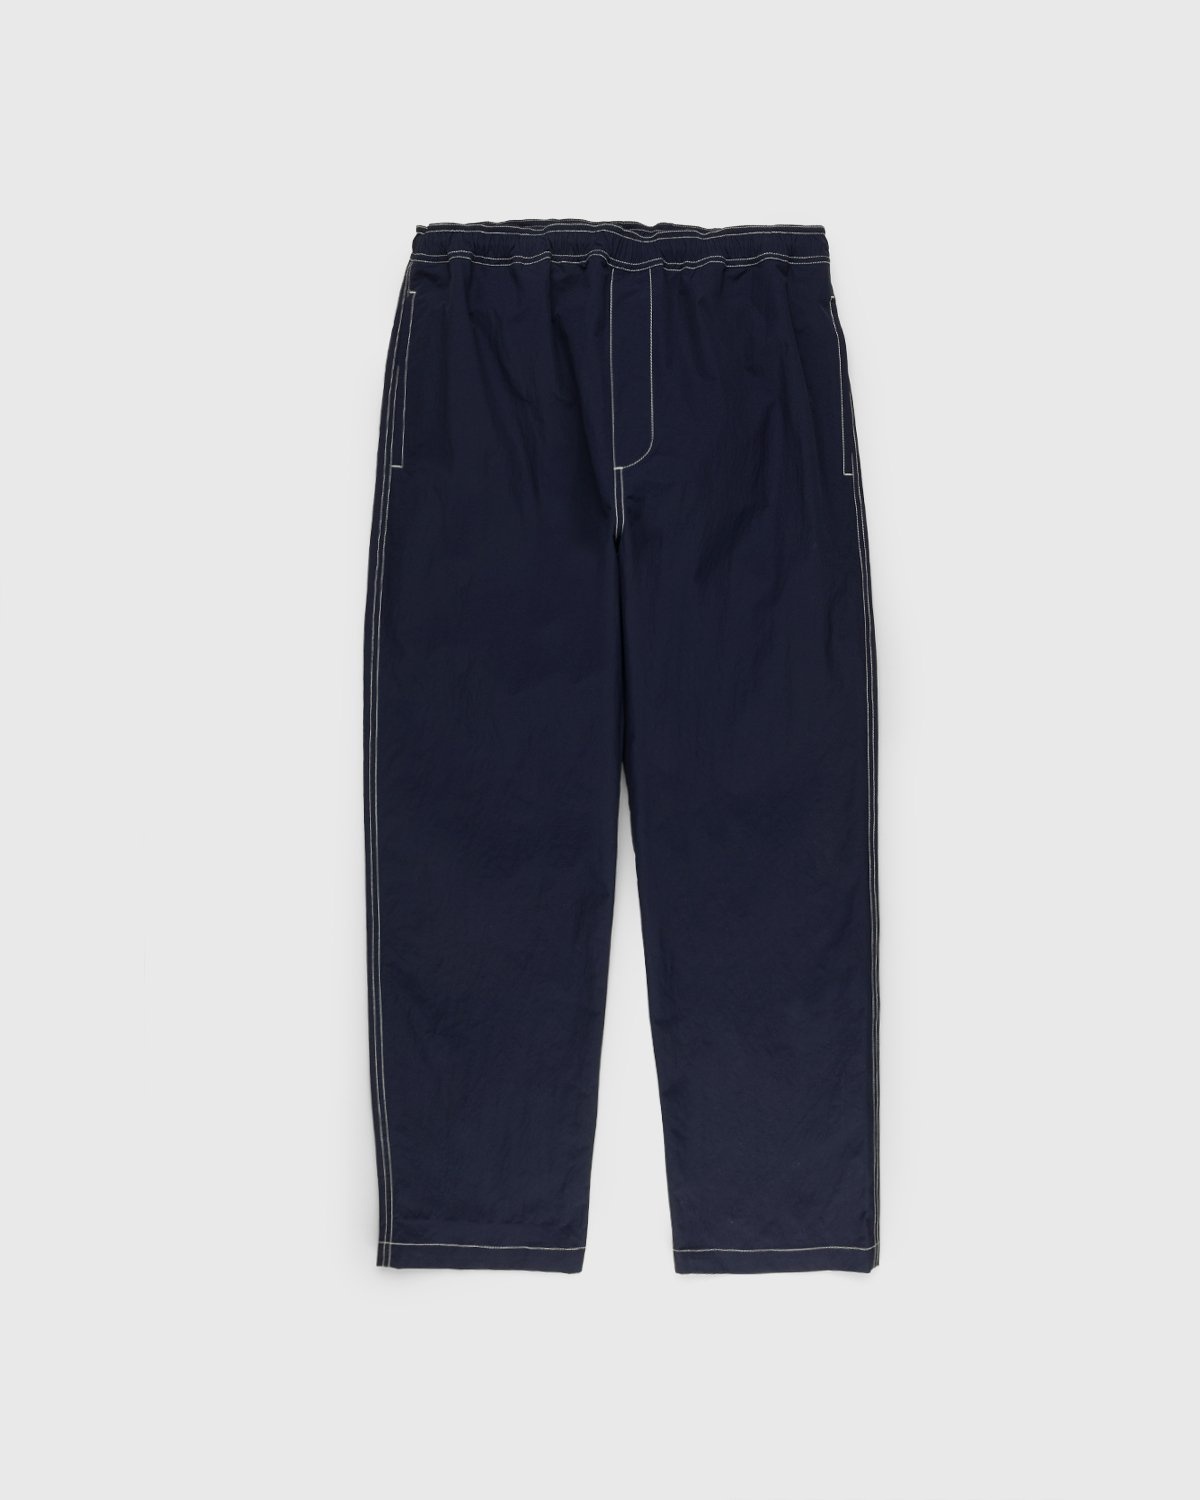 Highsnobiety – Contrast Brushed Nylon Elastic Pants Navy - Pants - Blue - Image 1